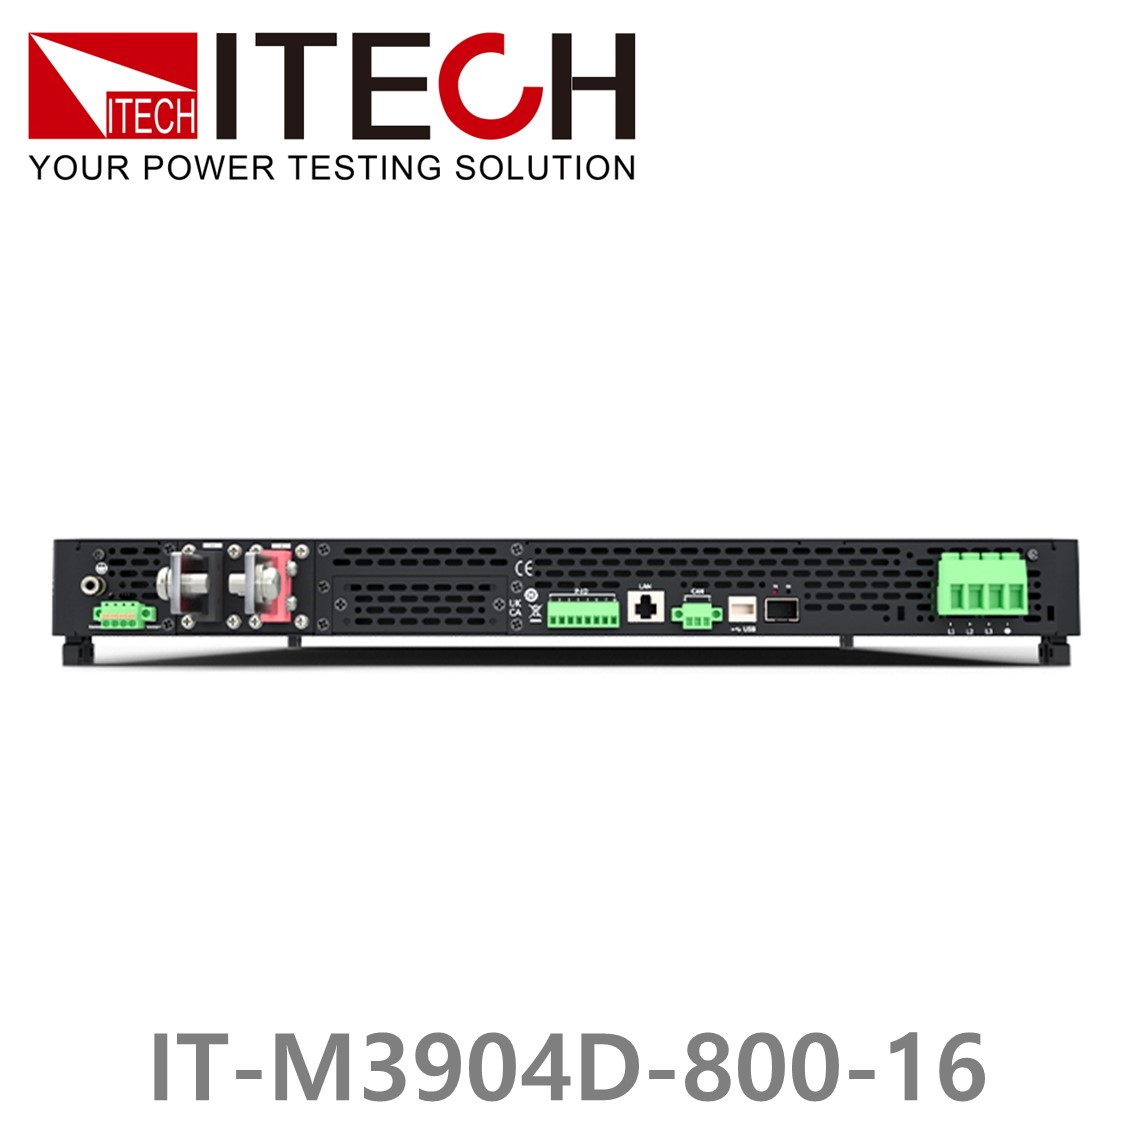 [ ITECH ] IT-M3904D-800-16 양방향 프로그래머블 DC전원공급기, DC파워서플라이